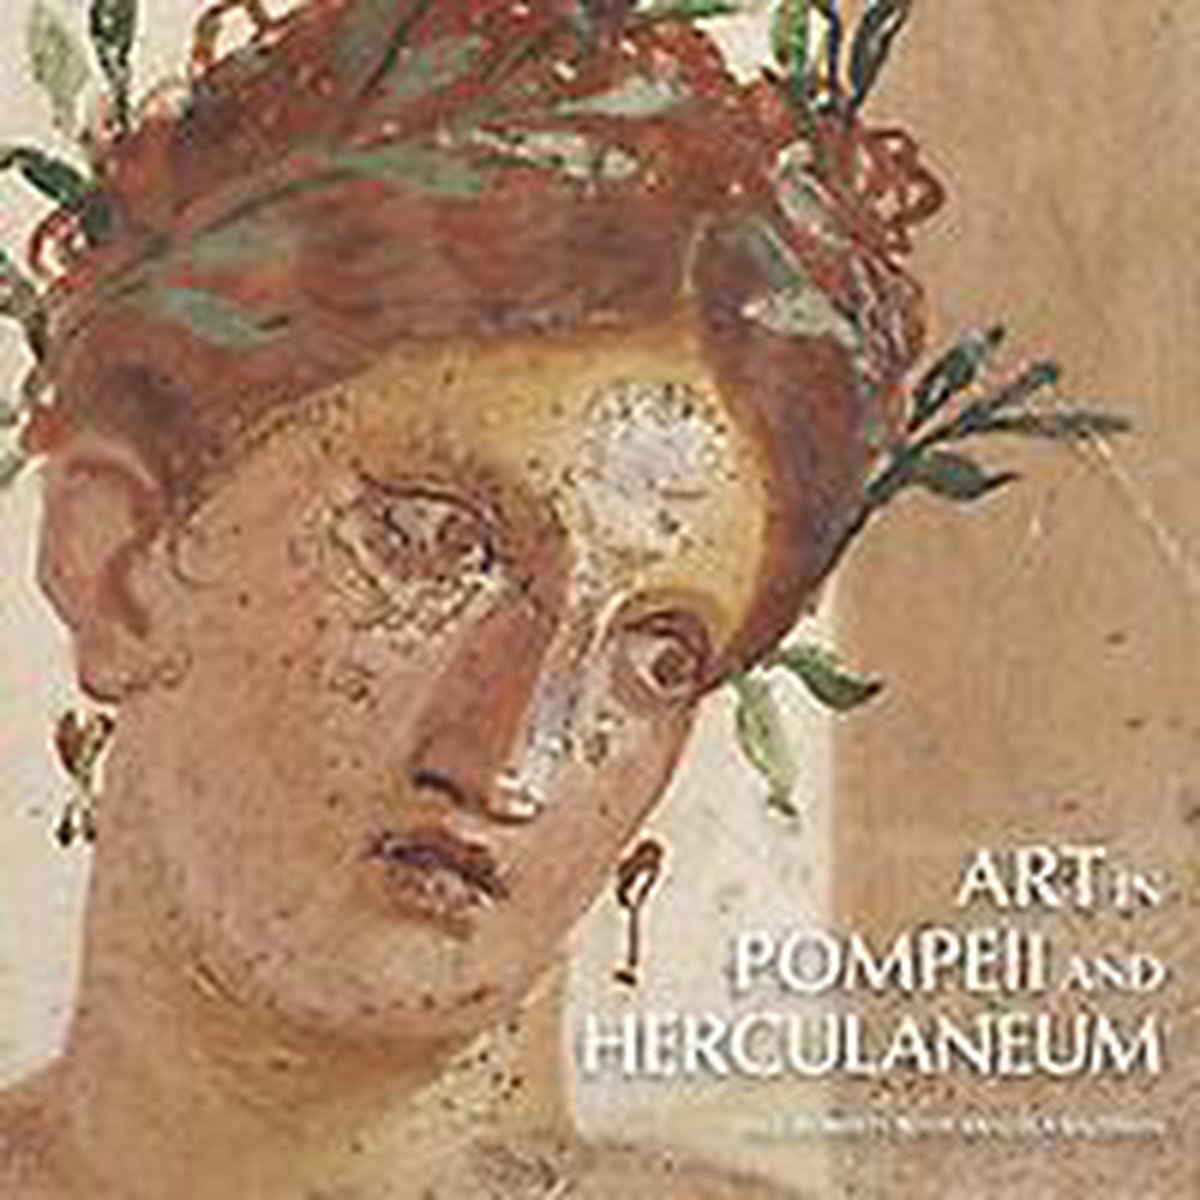 Art In Pompeii And Herculaneum